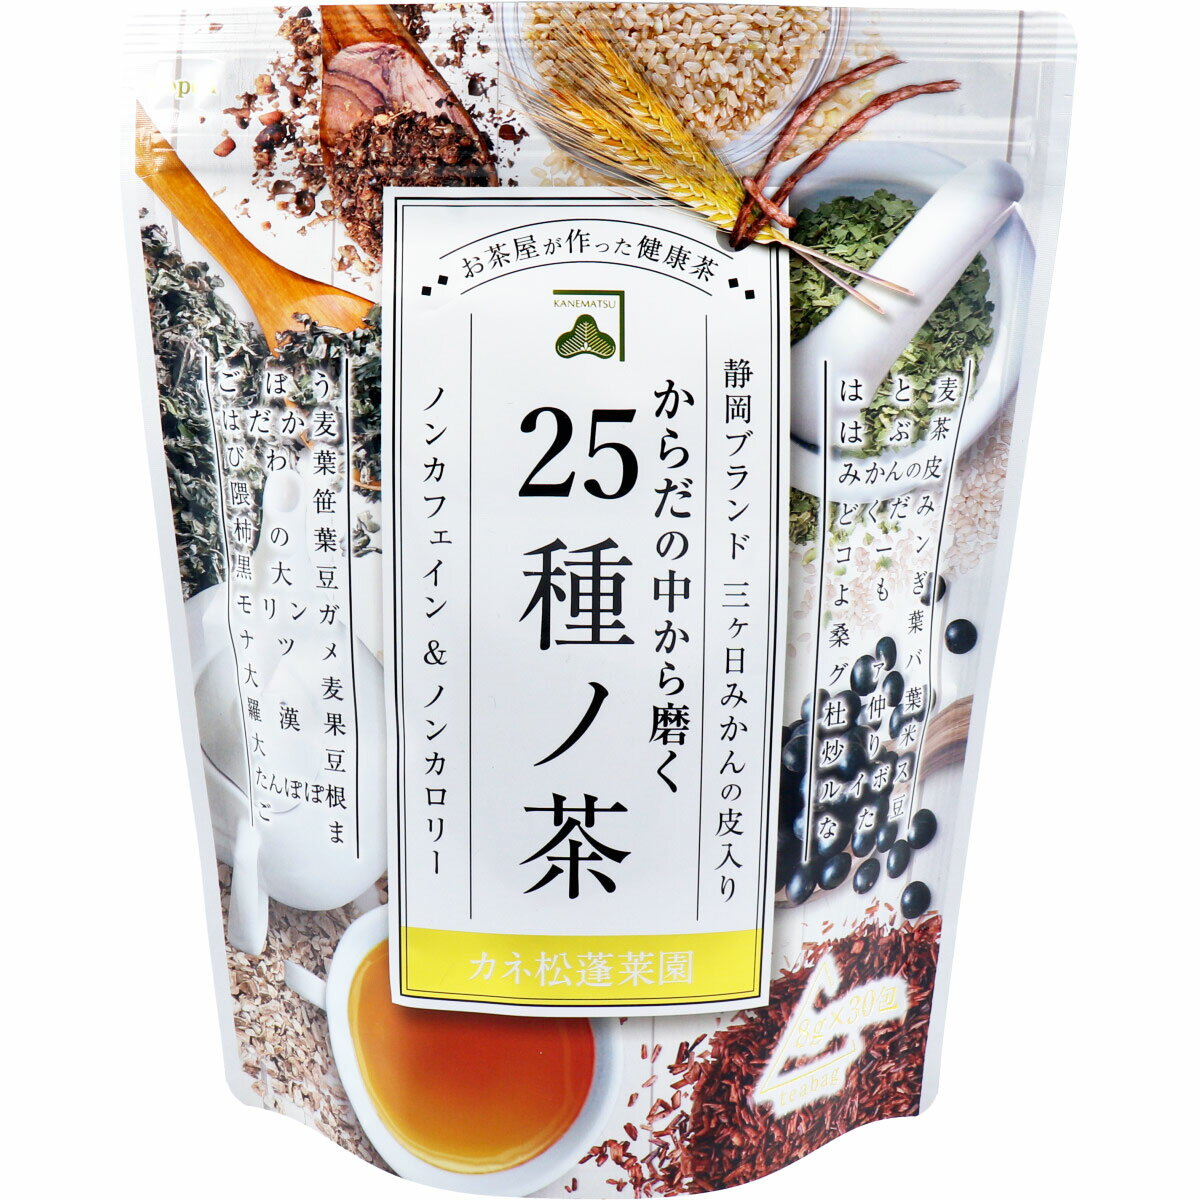 カネ松蓬菜園 からだの中から磨く 25種ノ茶 8...の商品画像